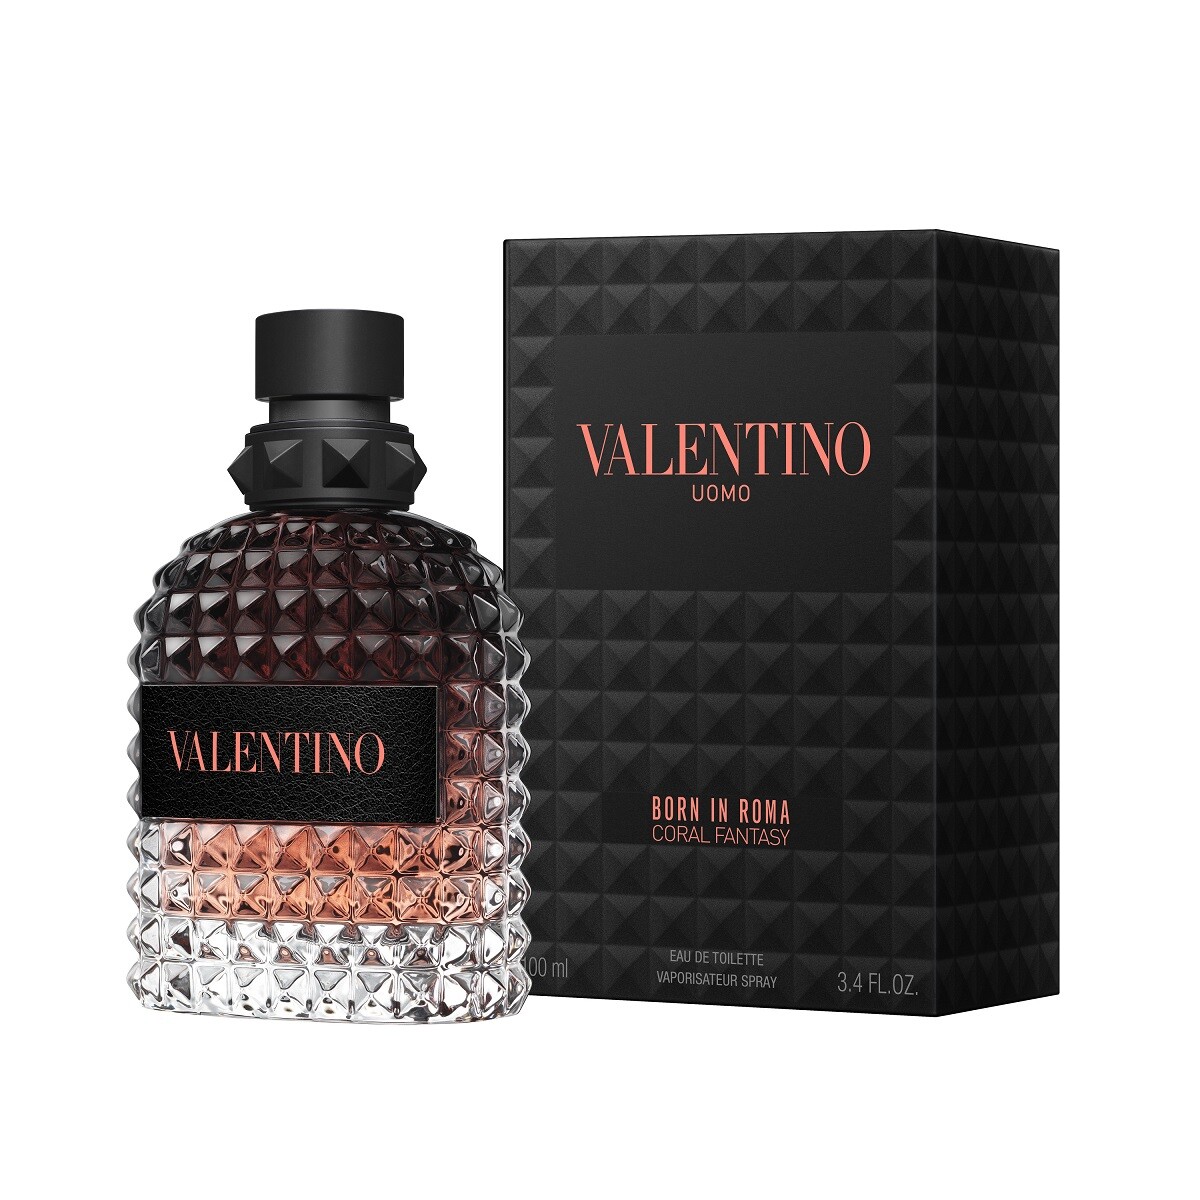 Perfume Valentino Born In Roma Coral Fantasy Uomo Edt 100ml 